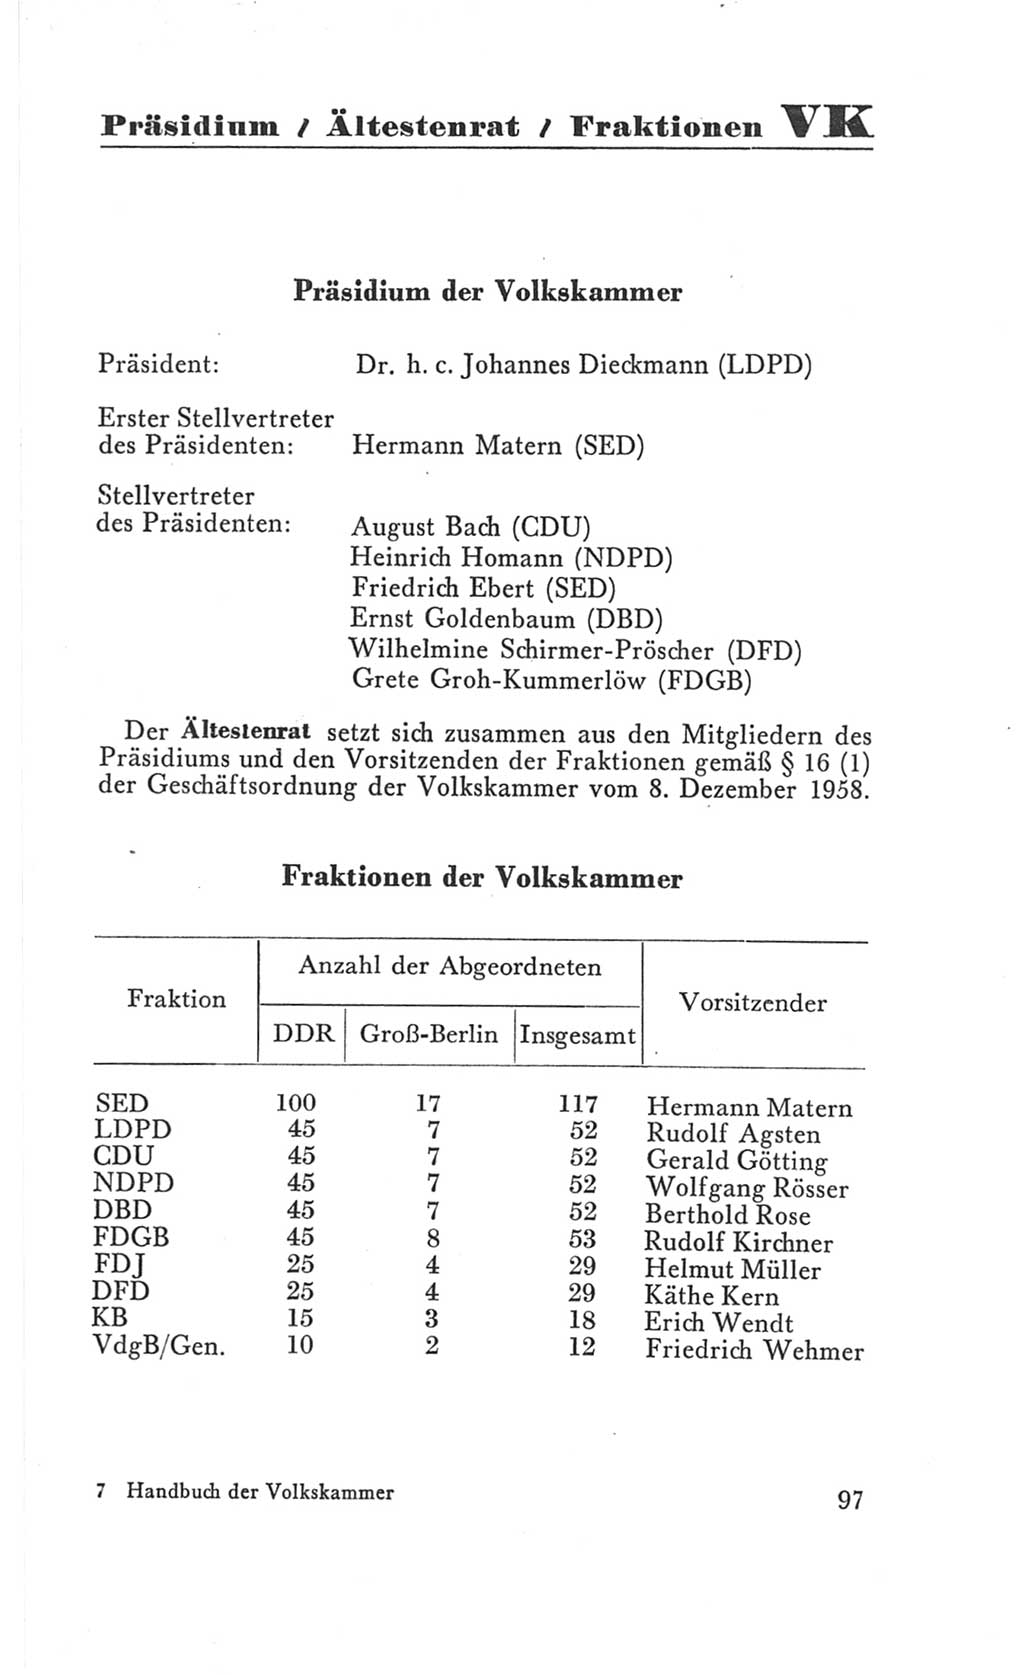 Handbuch der Volkskammer (VK) der Deutschen Demokratischen Republik (DDR), 3. Wahlperiode 1958-1963, Seite 97 (Hdb. VK. DDR 3. WP. 1958-1963, S. 97)